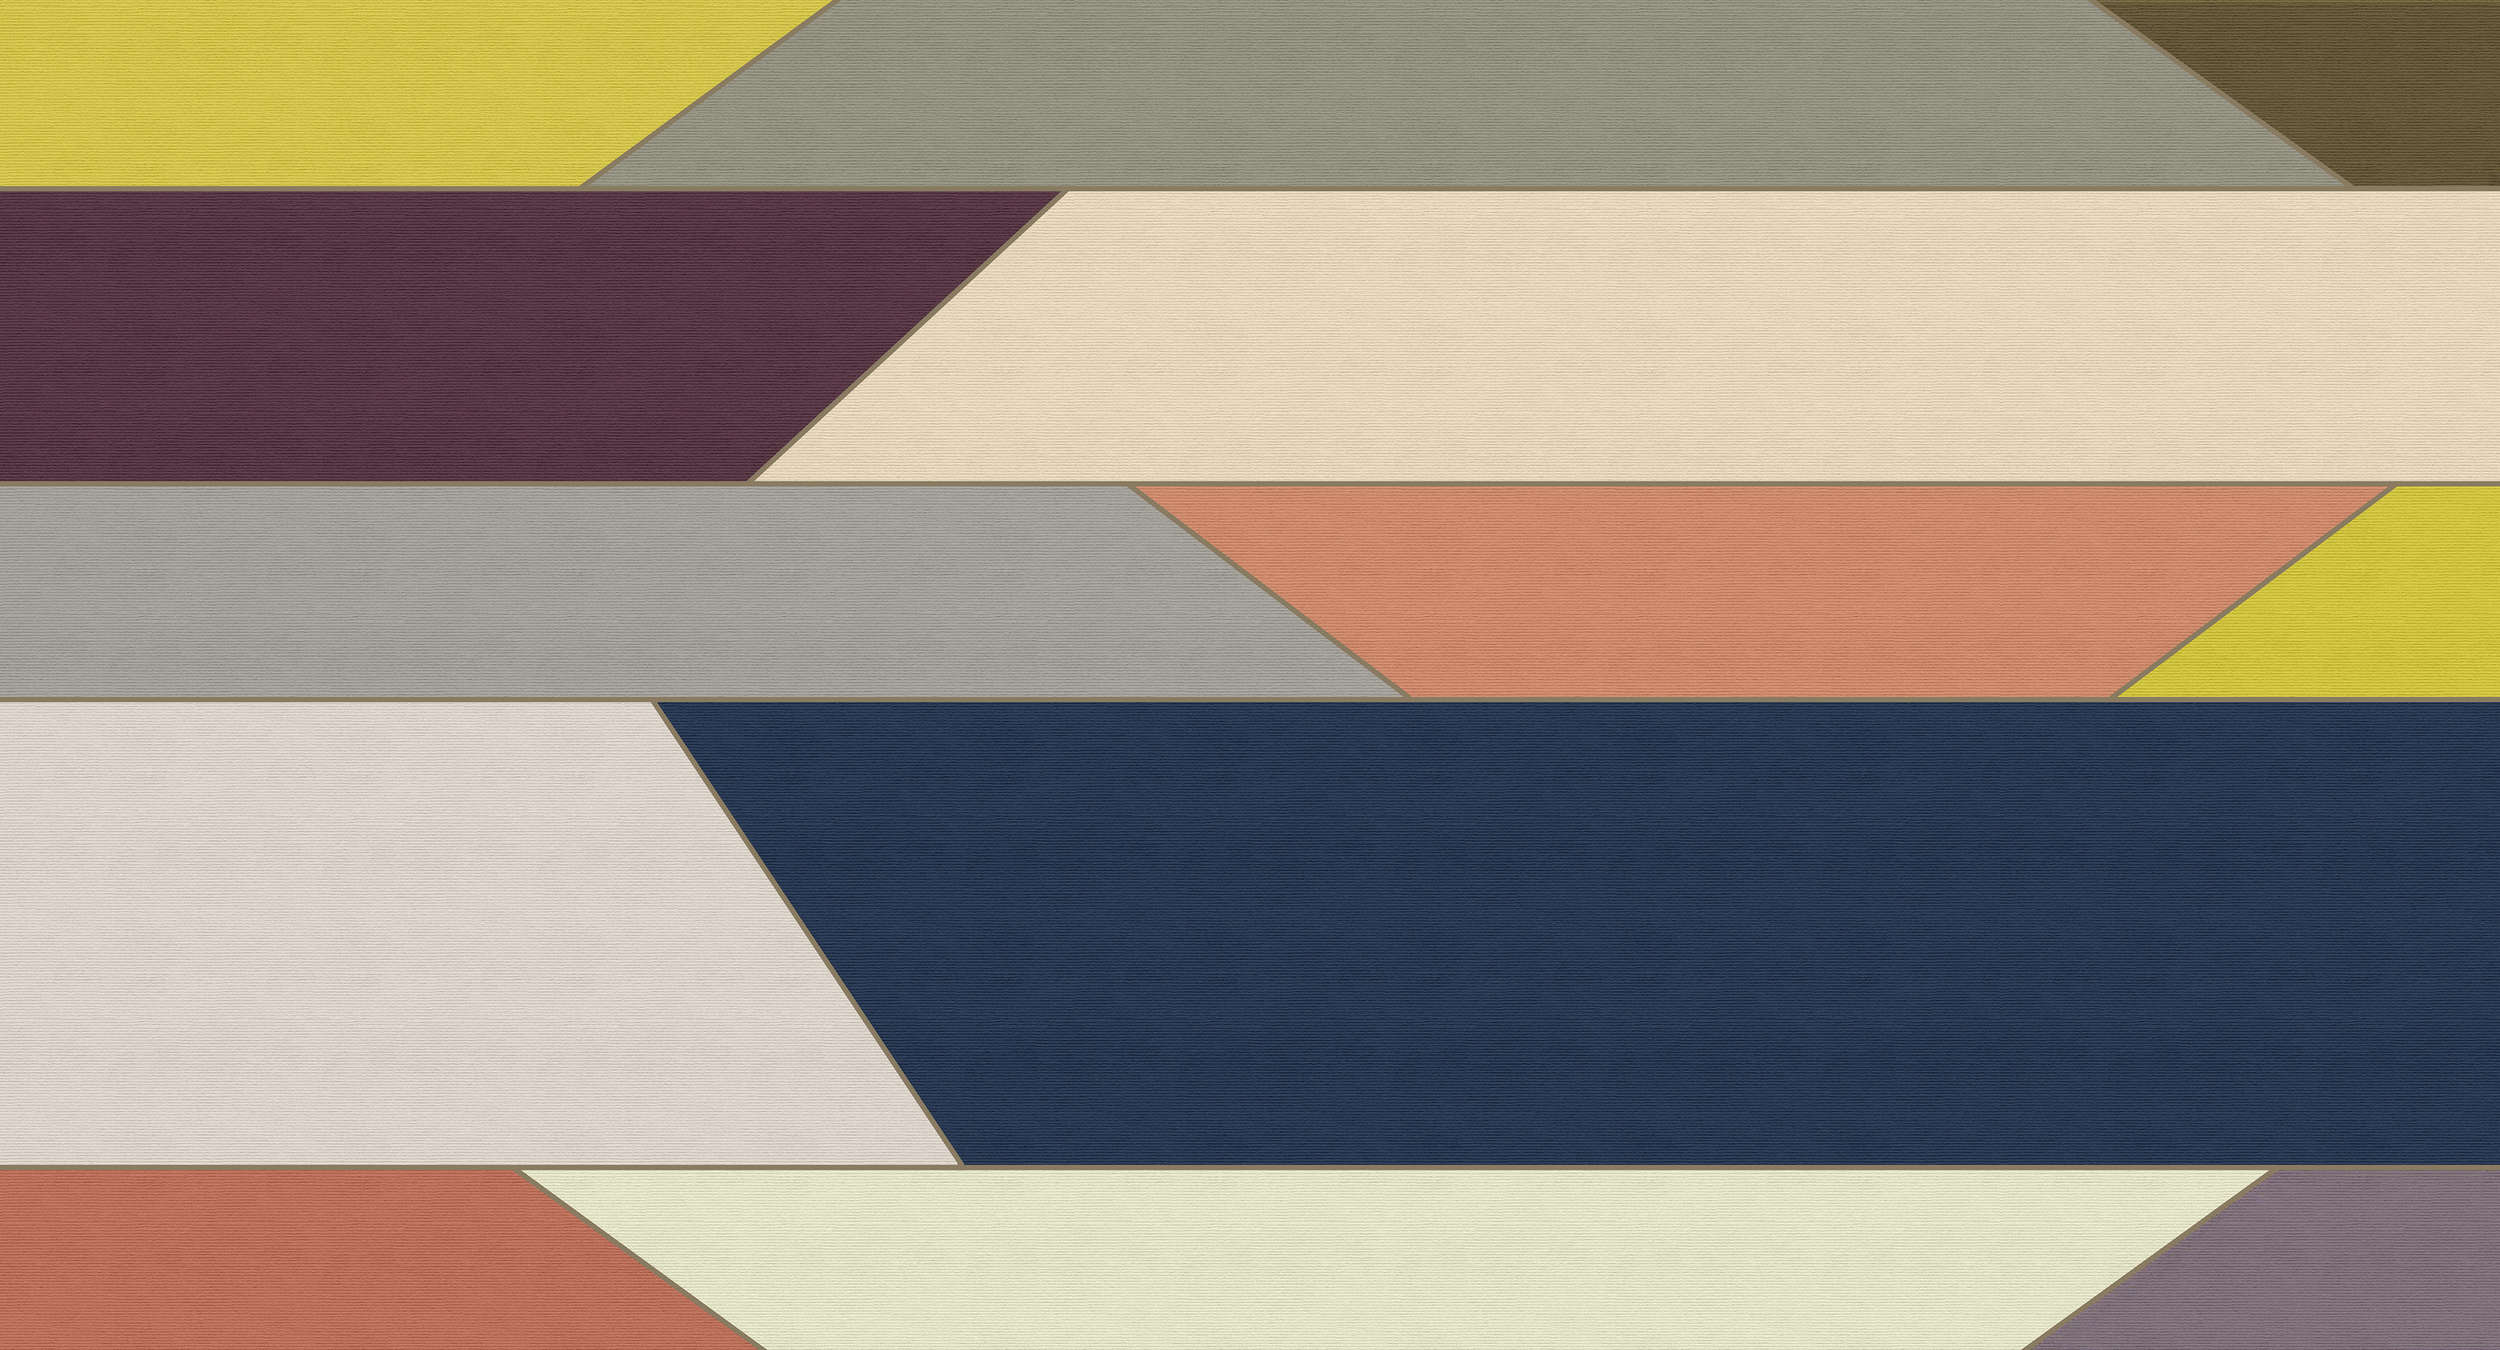             Geometry 1 - Papier peint avec motif à rayures horizontales multicolores - structure côtelée - beige, bleu | structure intissé
        